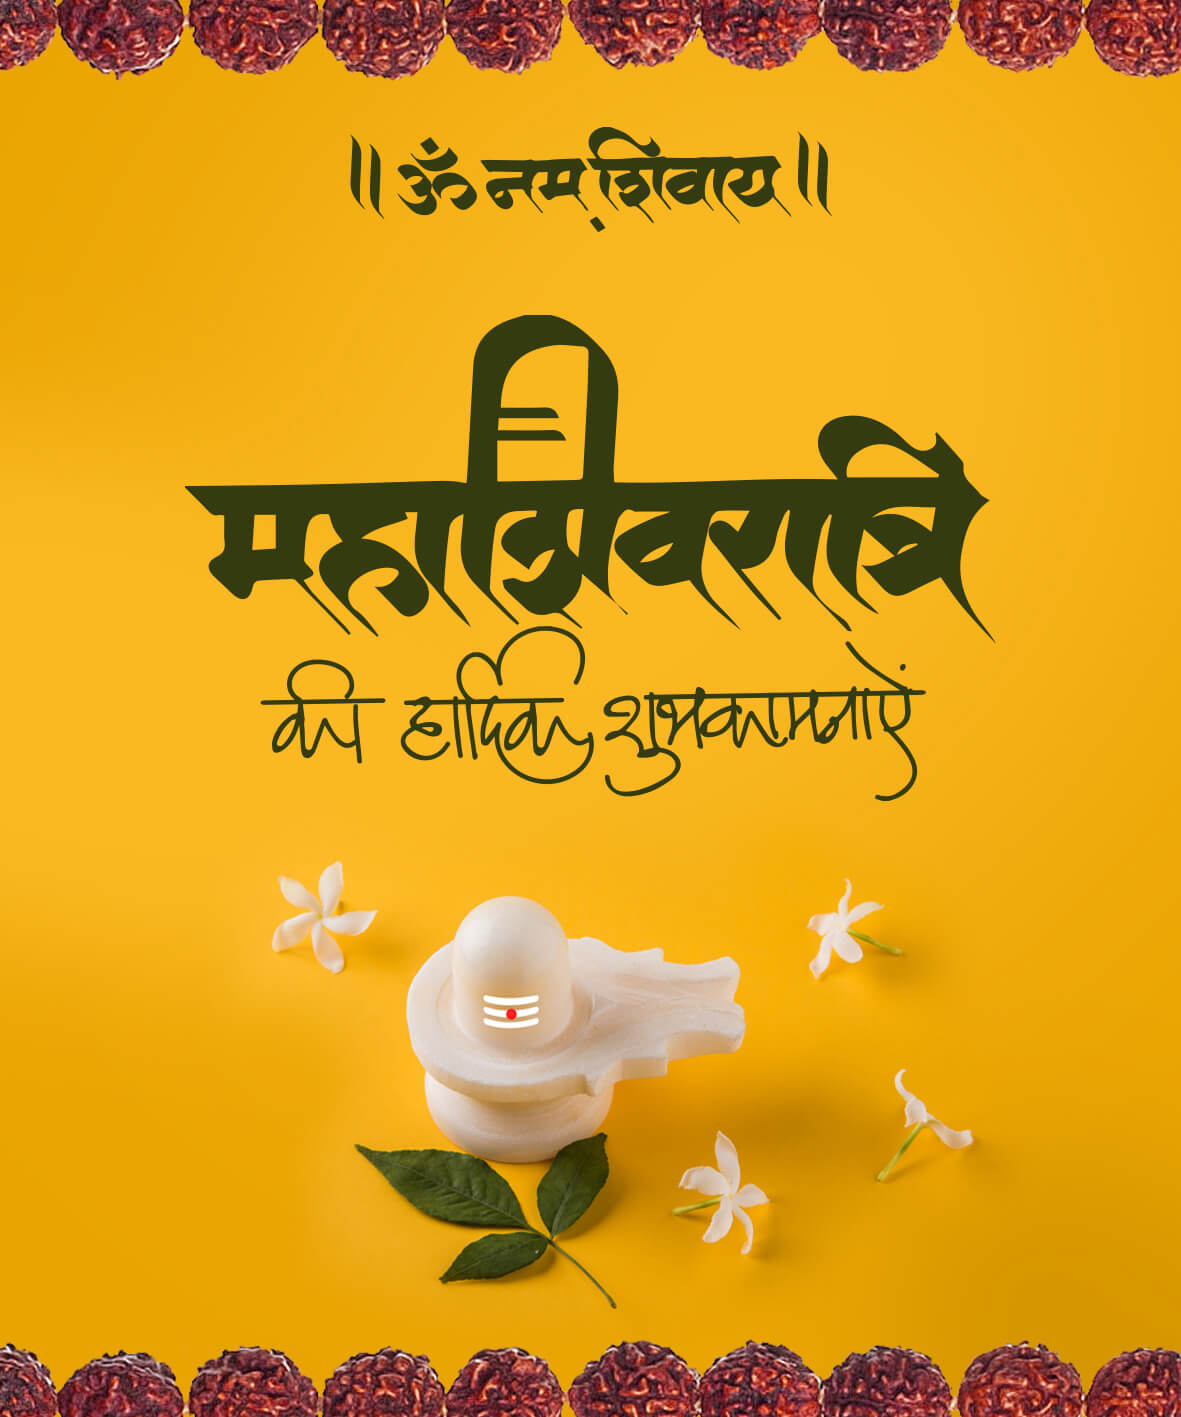 Mahashivratri_12 | eGreetings Portal